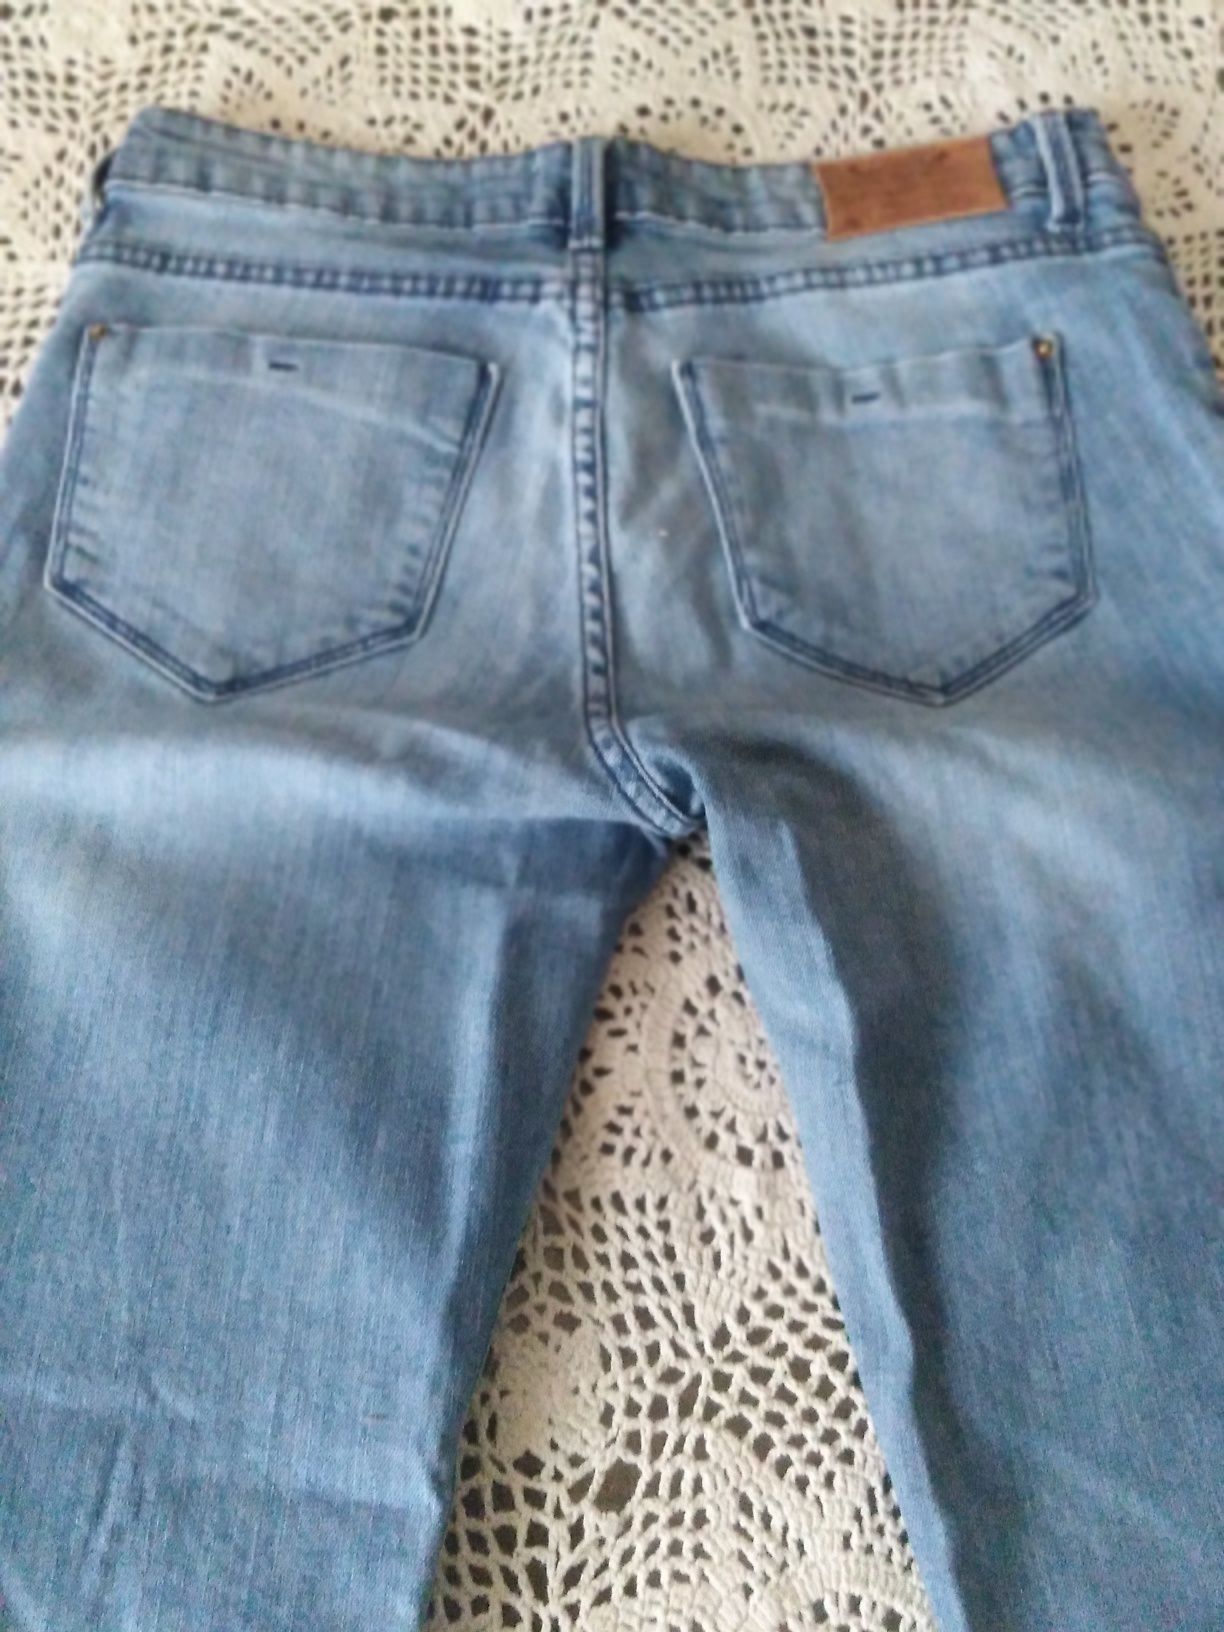 Spodnie zara damskie jasny jeans r.38